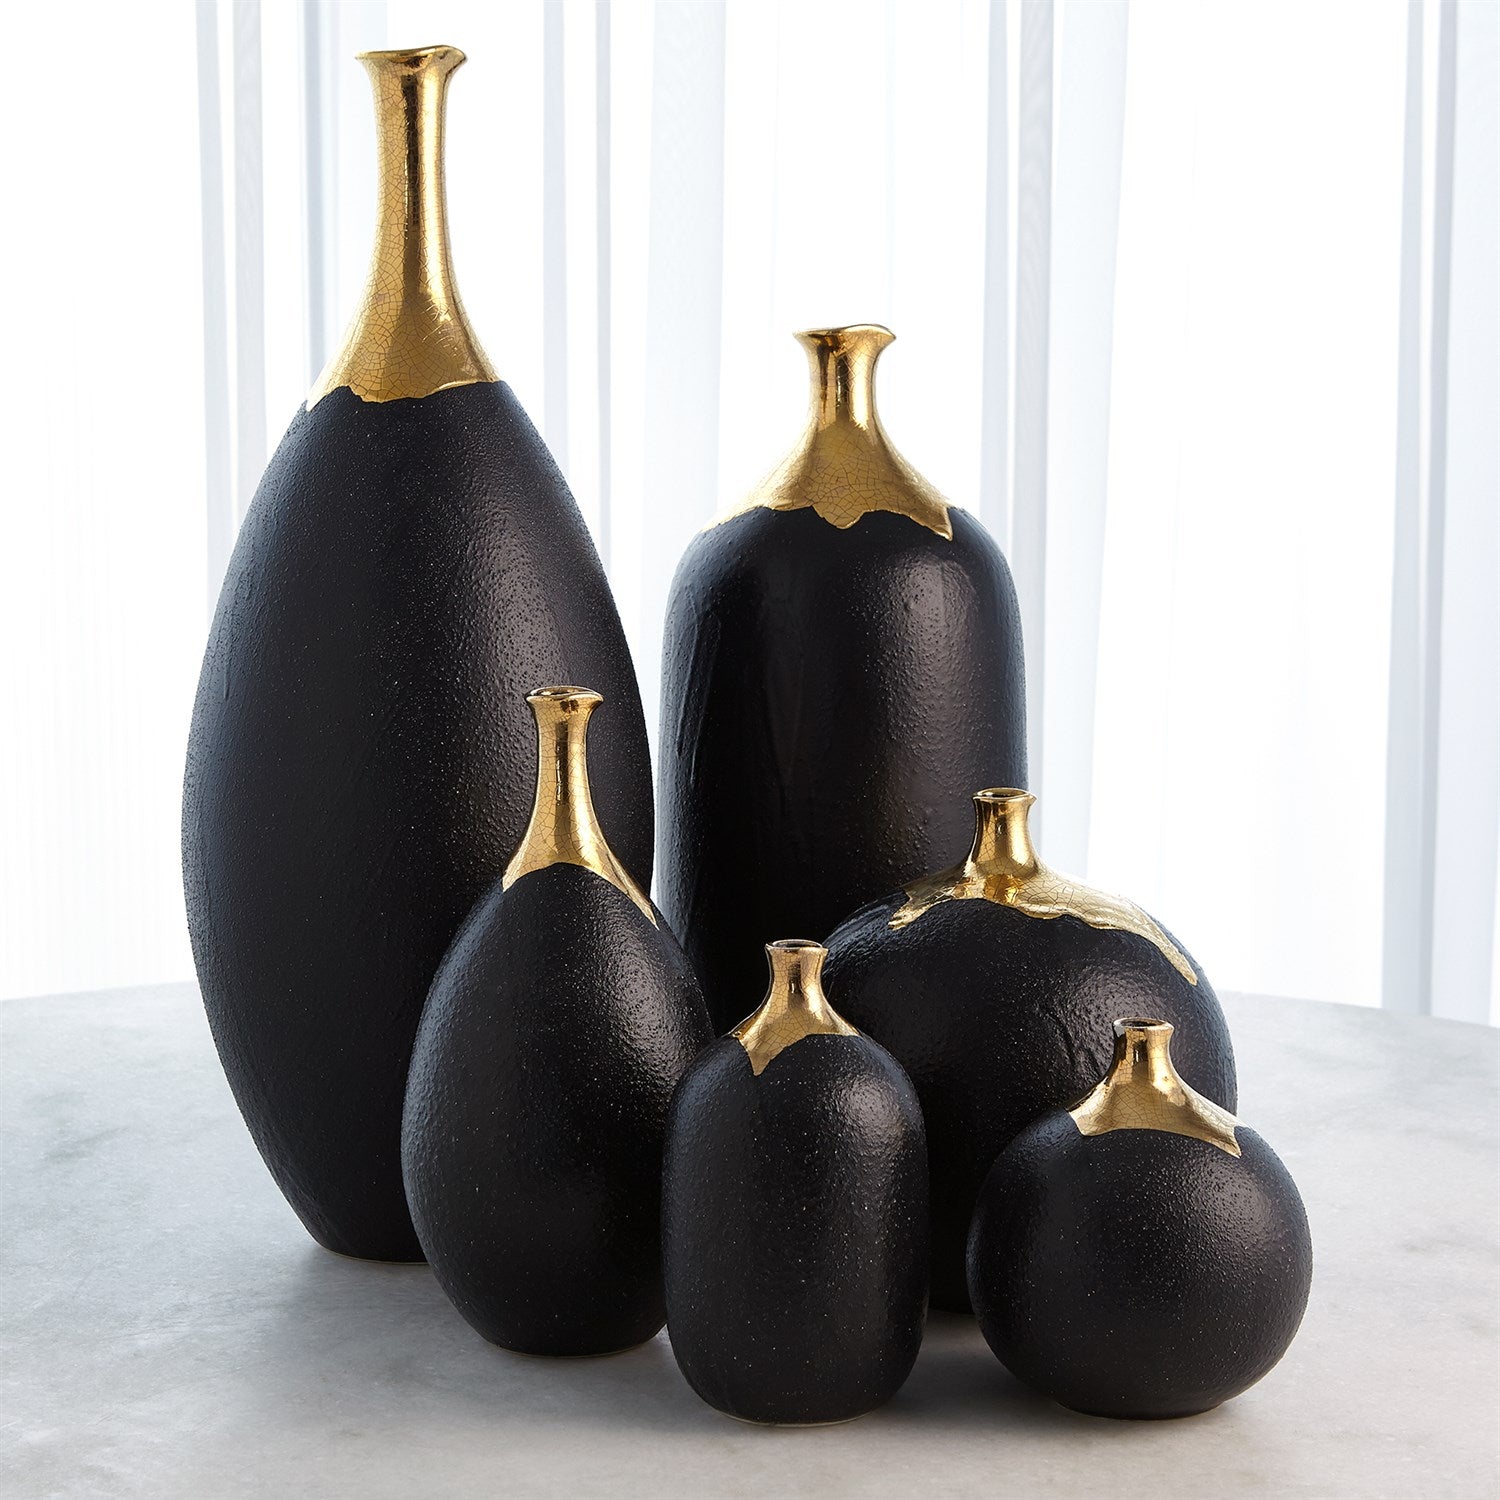 Dipped Golden Crackle/Black Sphere Vase